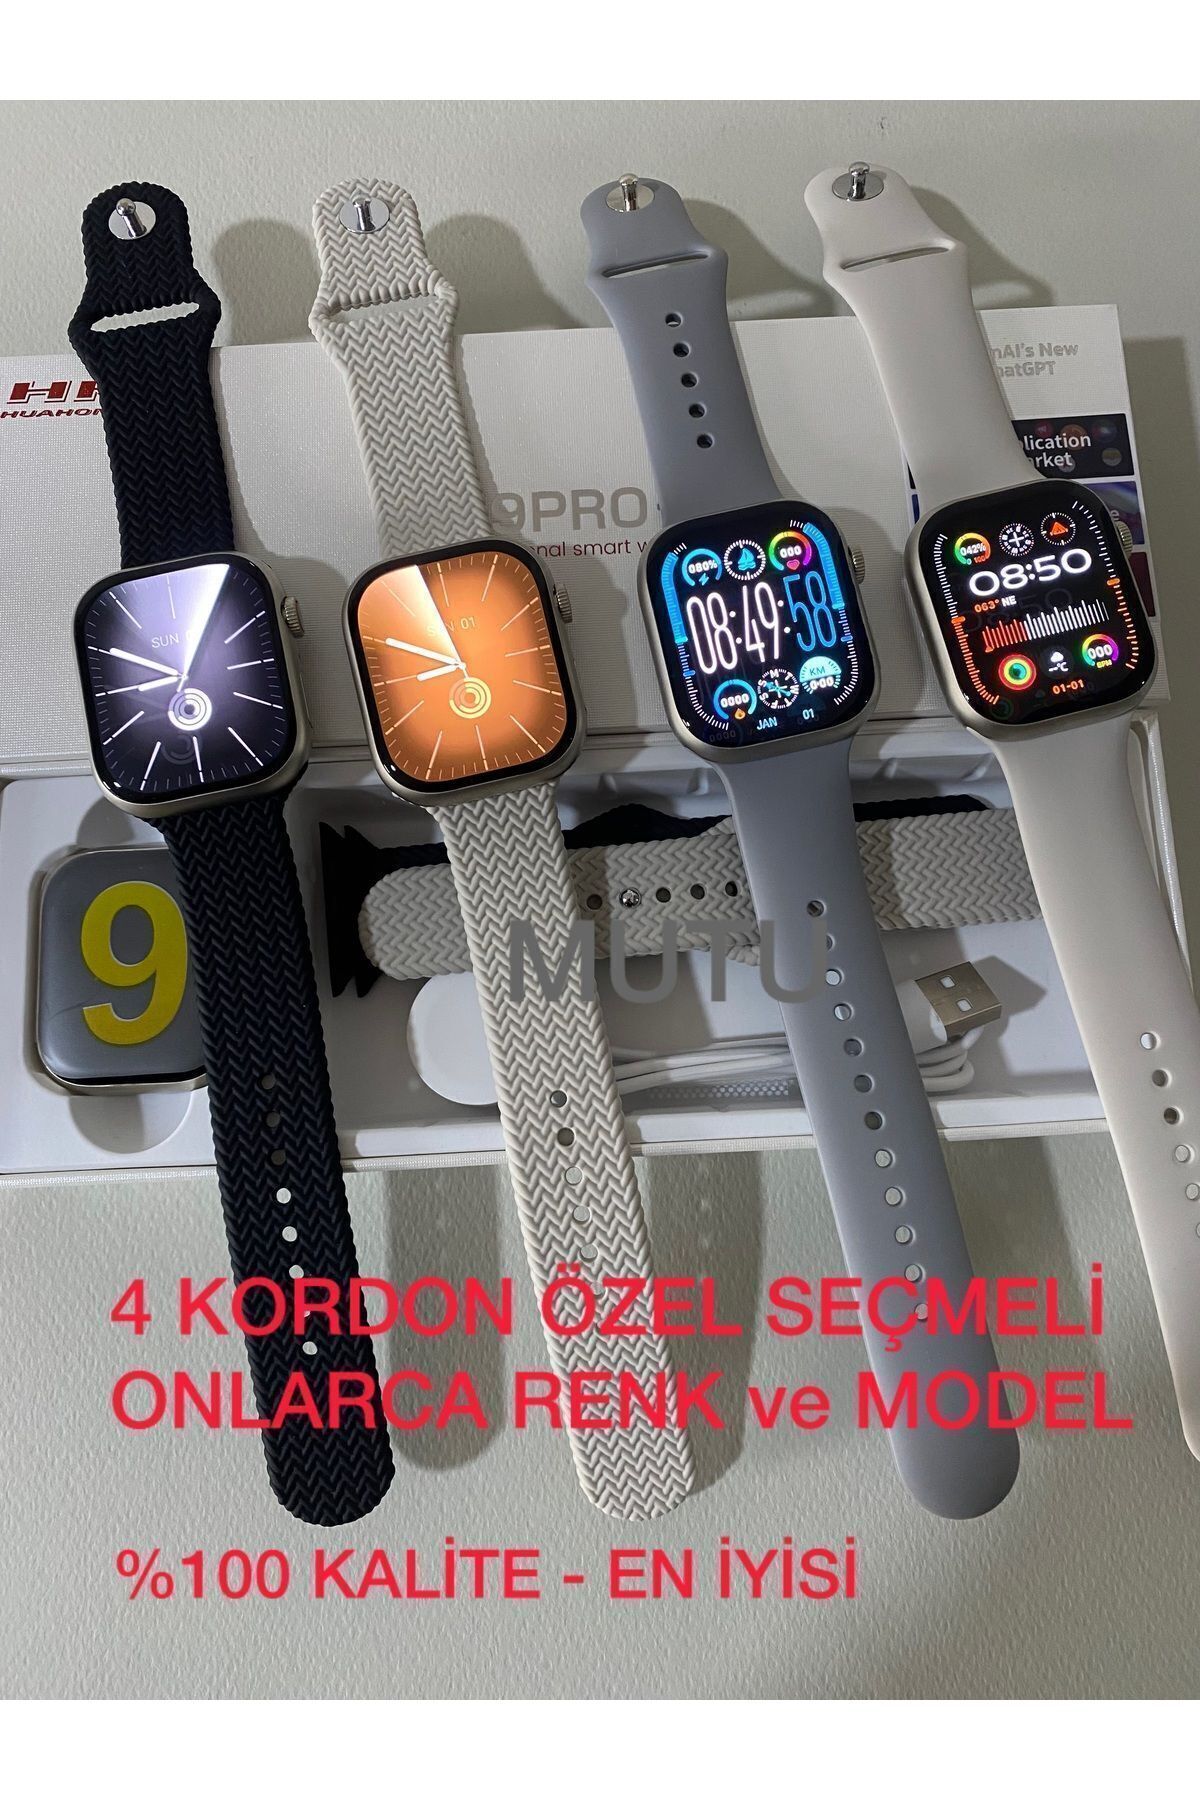 MUTU Hk9 Pro Plus (4 KORDON ÖZEL SEÇMELİ) Son Versiyon Watch9 Amoled Ekran Akıllı Saat